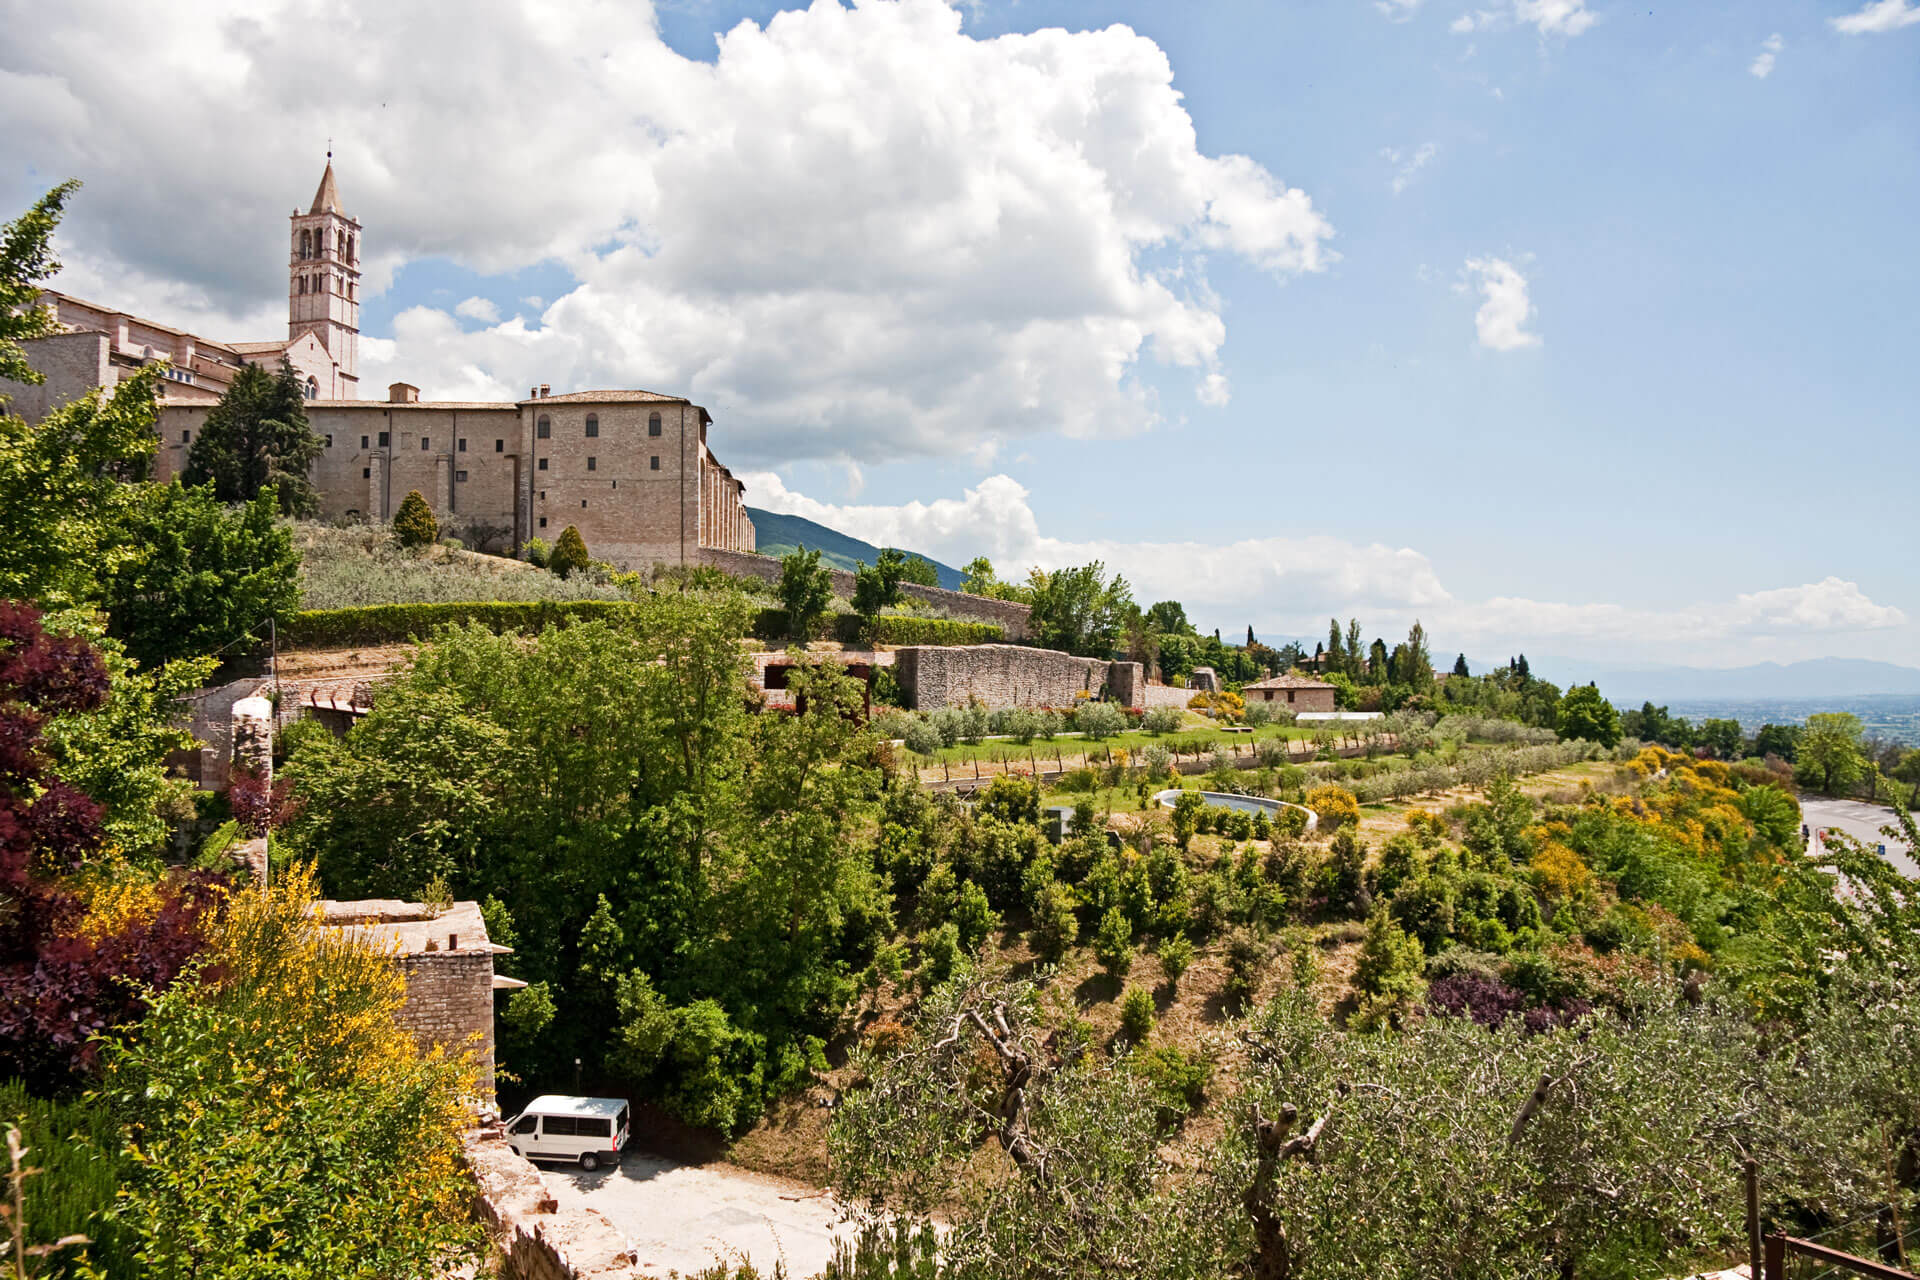 Parcheggio Mojano Assisi -Porta Lavagine Urbino - Nuovo P Manini 4